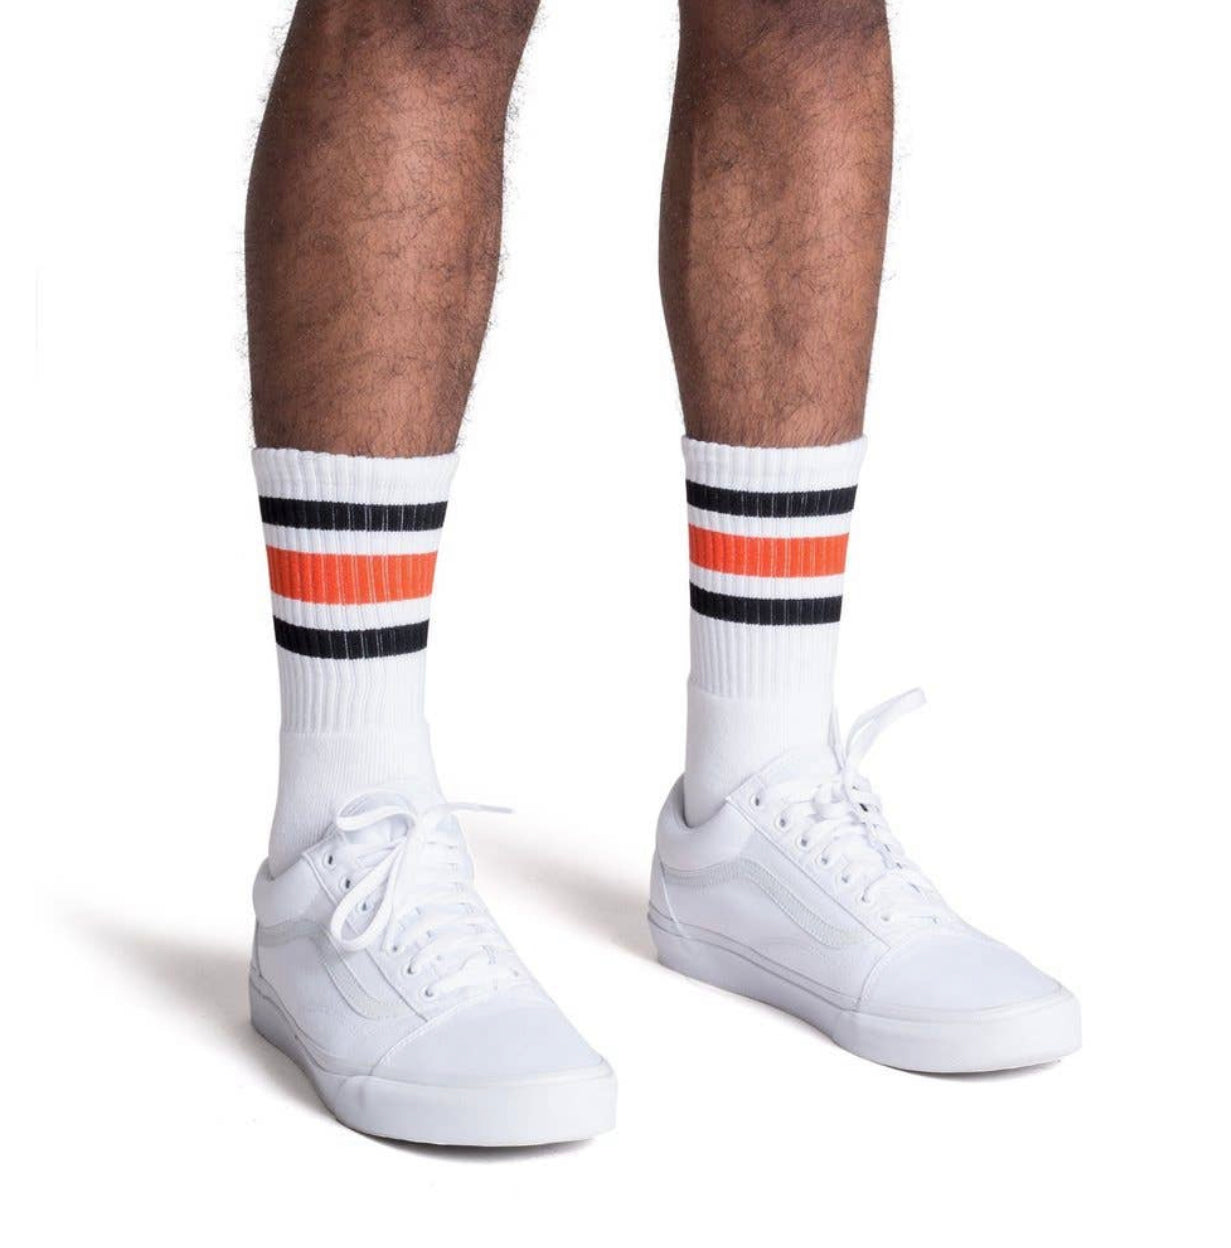 Black & Orange Striped Socks